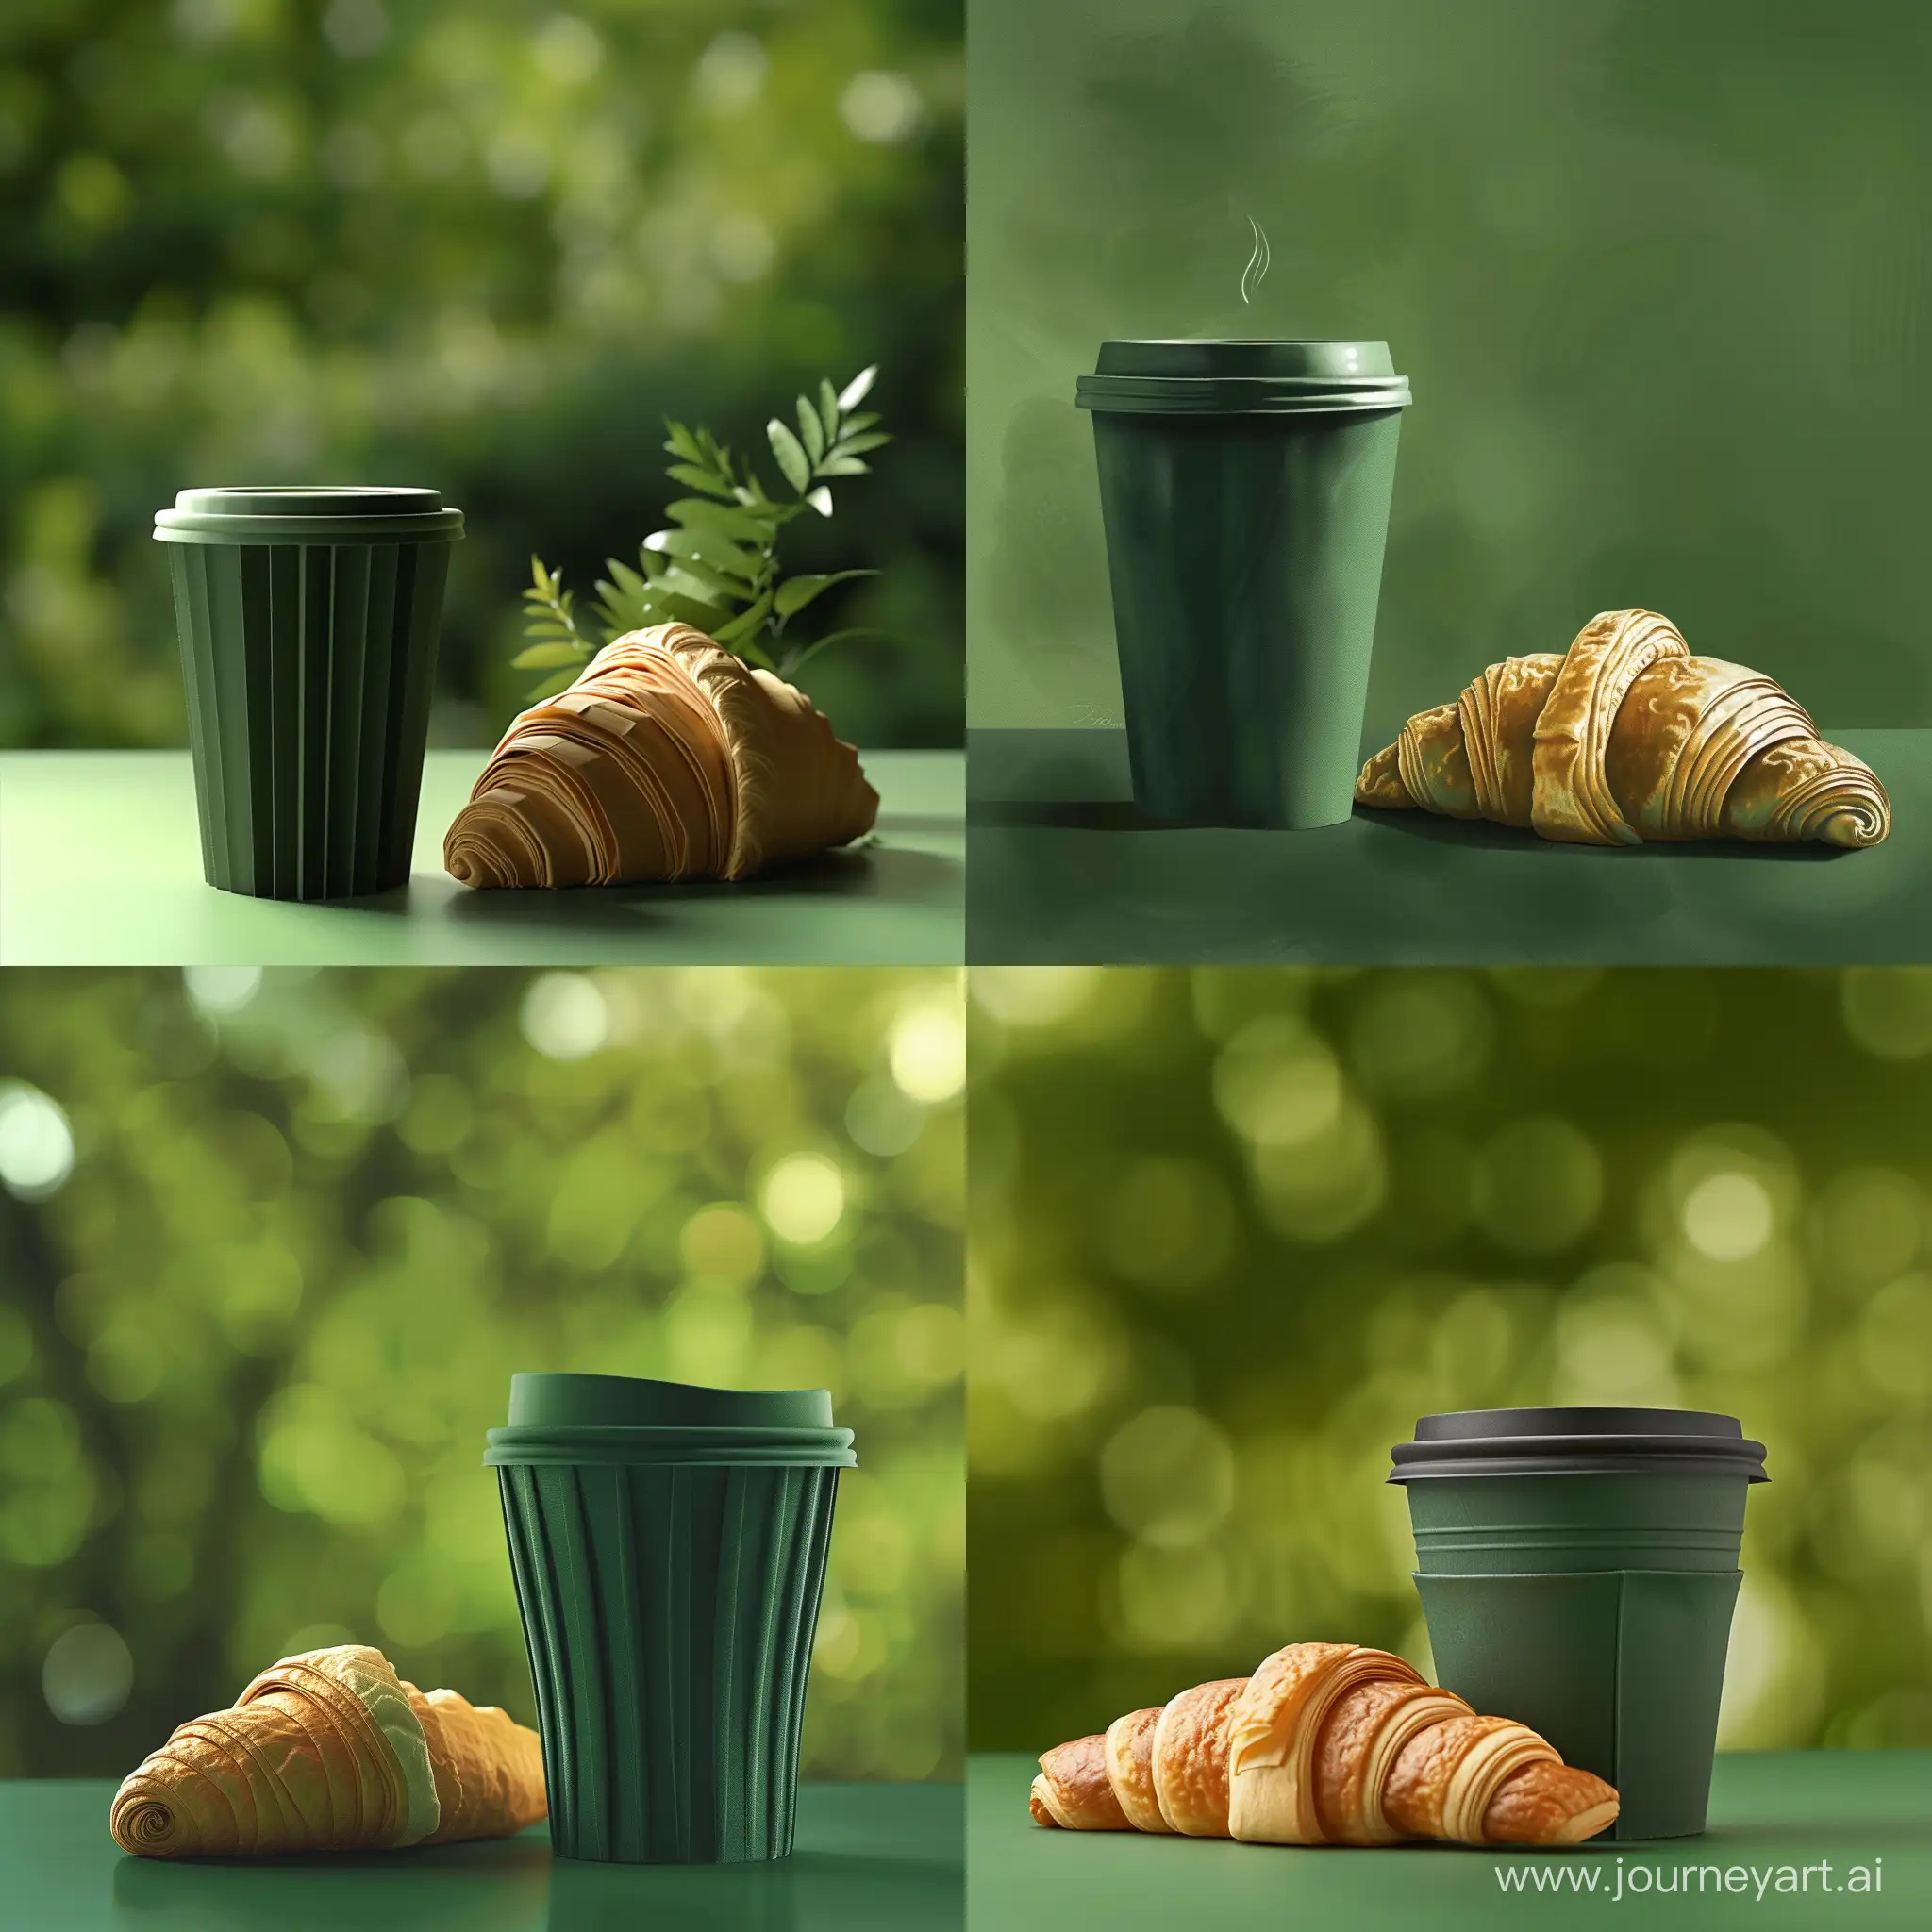 Нарисуй темно-зеленый бумажный стакан для кофе и круассан рядом с ним, сделай фон размытым в зеленых оттенках